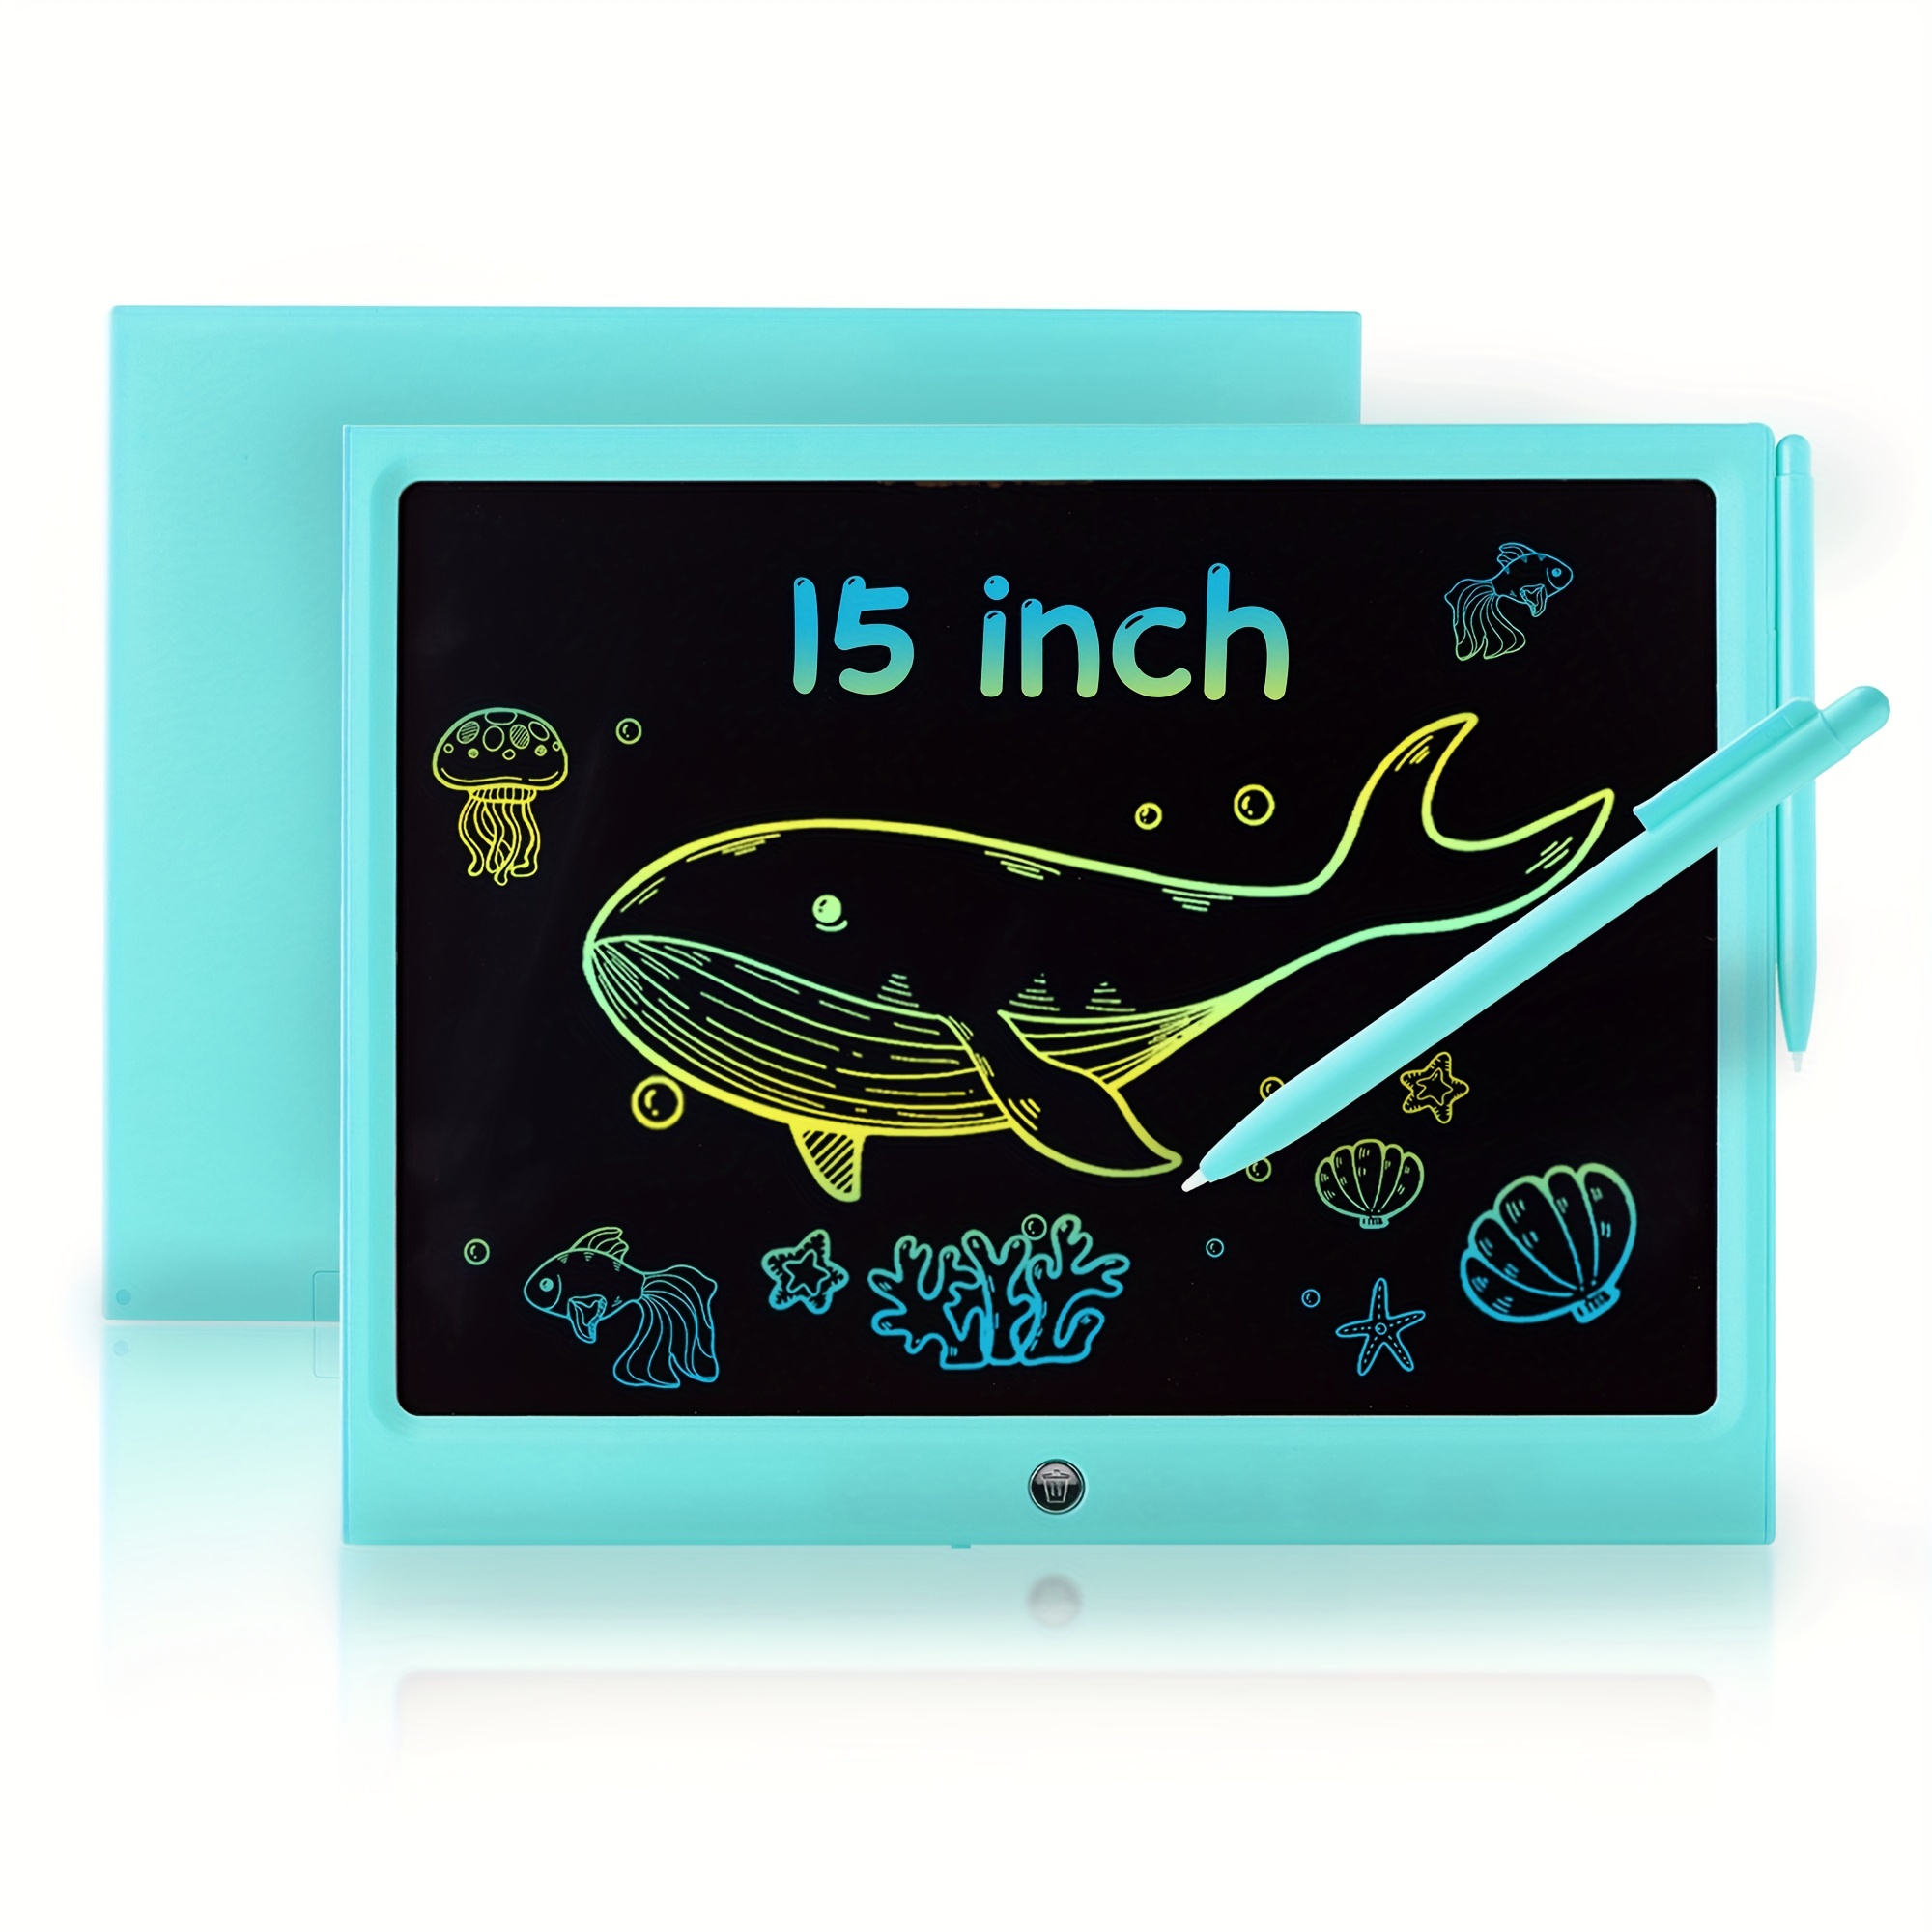 Juguetes Regalos para niños de 3, 4 y 5 años, tableta de escritura LCD para  niños, regalos de cumpleaños para niños, regalos de regreso a clases,  tablero de garabatos en forma de búho, pantalla colorida, juguete educativo  de aprendizaje  